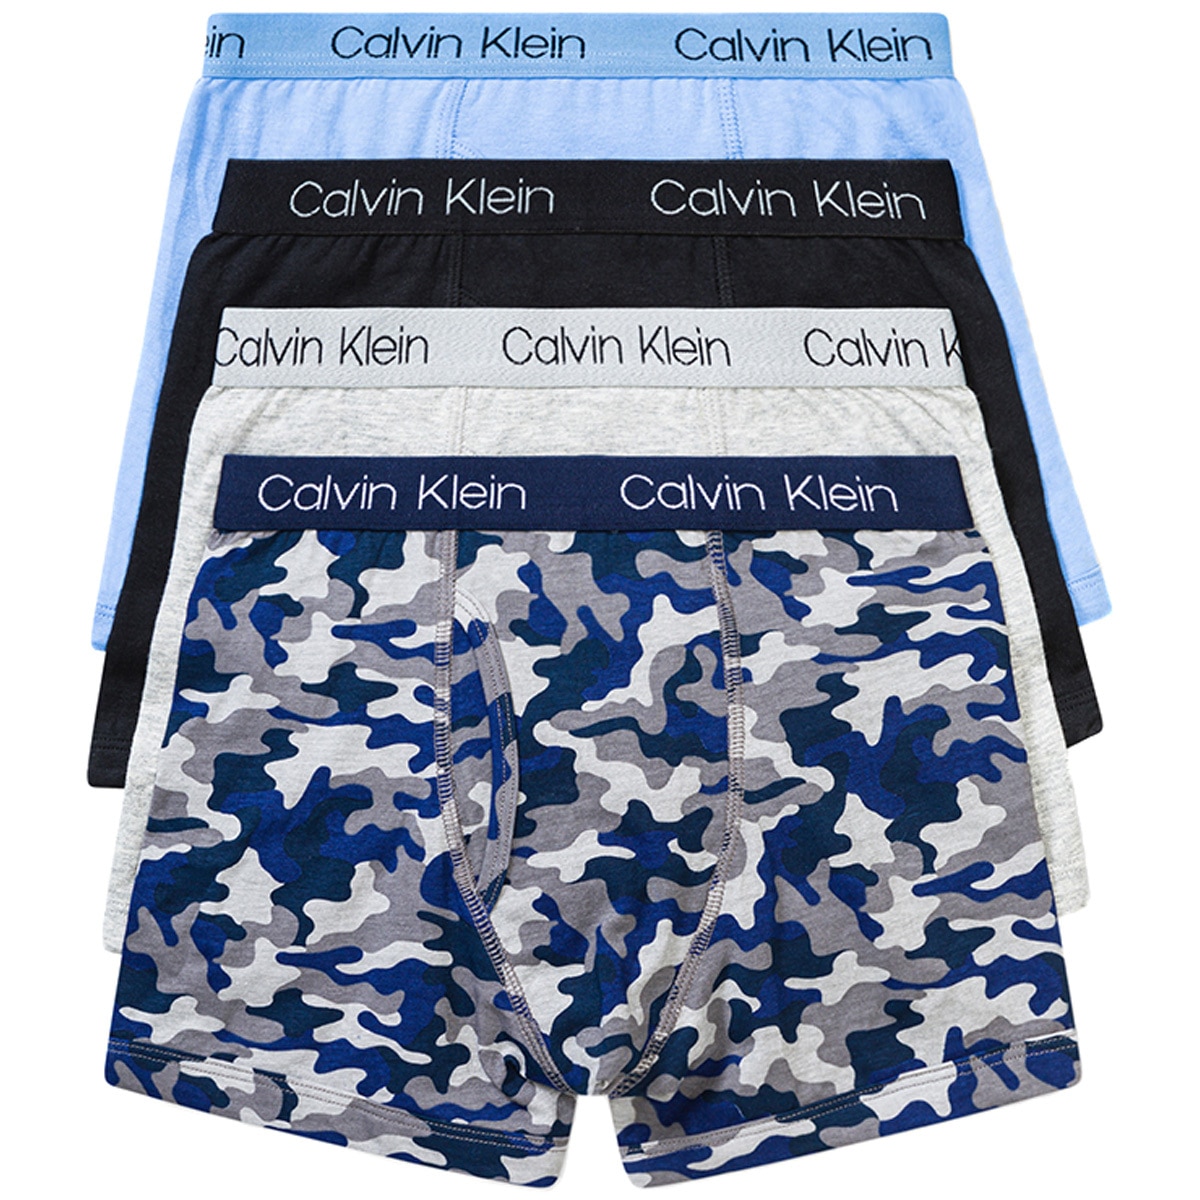 Calvin Klein Kids' Underwear Blue, Grey & Black | Costco ...